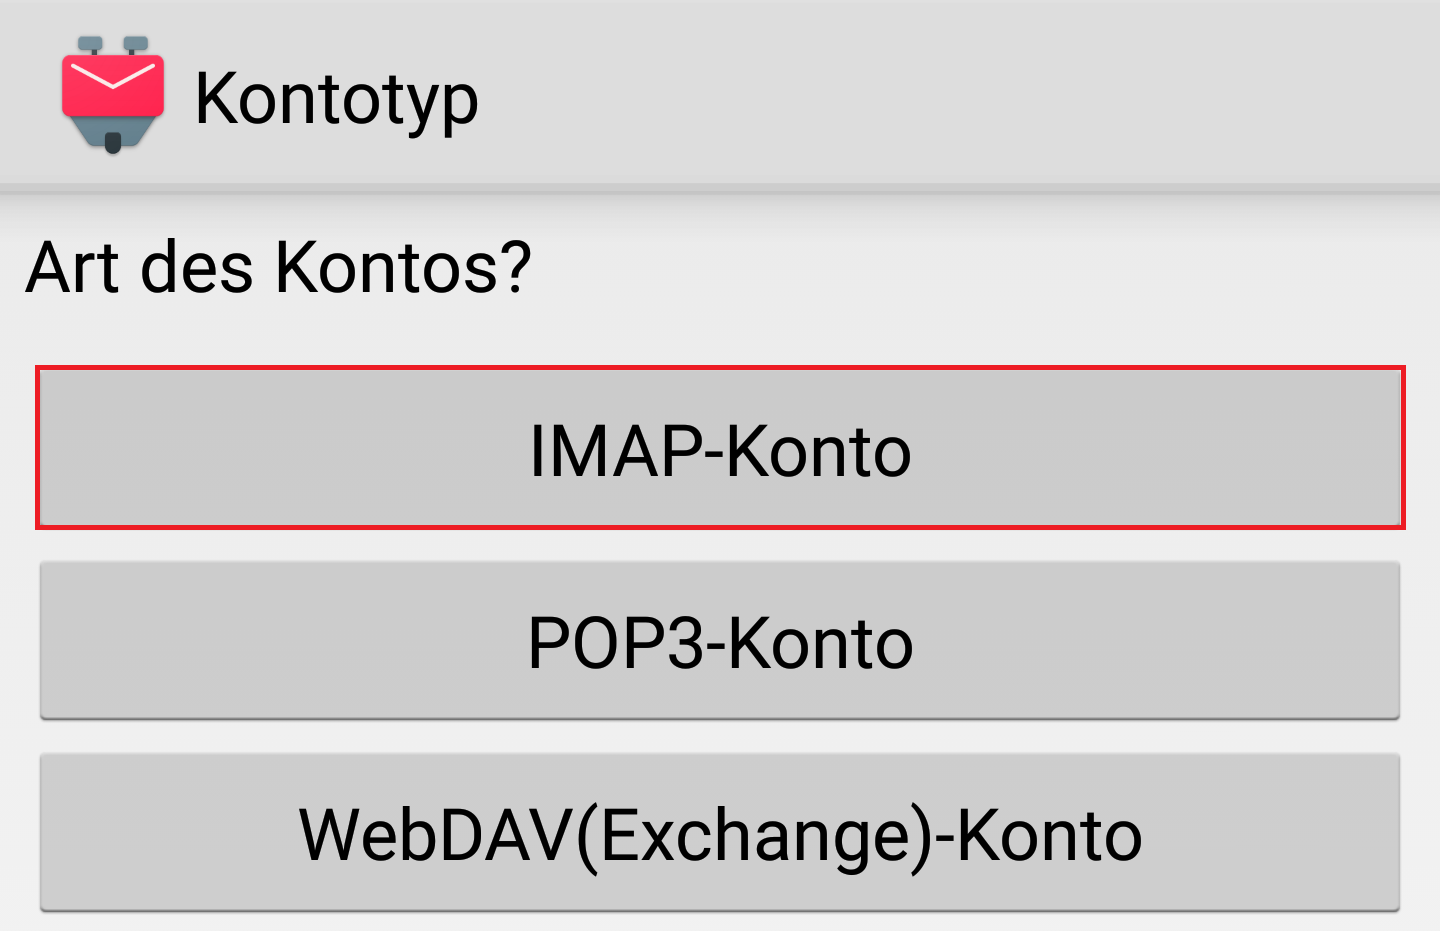 K-9-Logo, Kontotyp. Art des Kontos, Fragezeichen. 3 Schaltflächen, markiert IMPA-Konto, POP3-Konto, WebDAV(Exchange)-Konto.